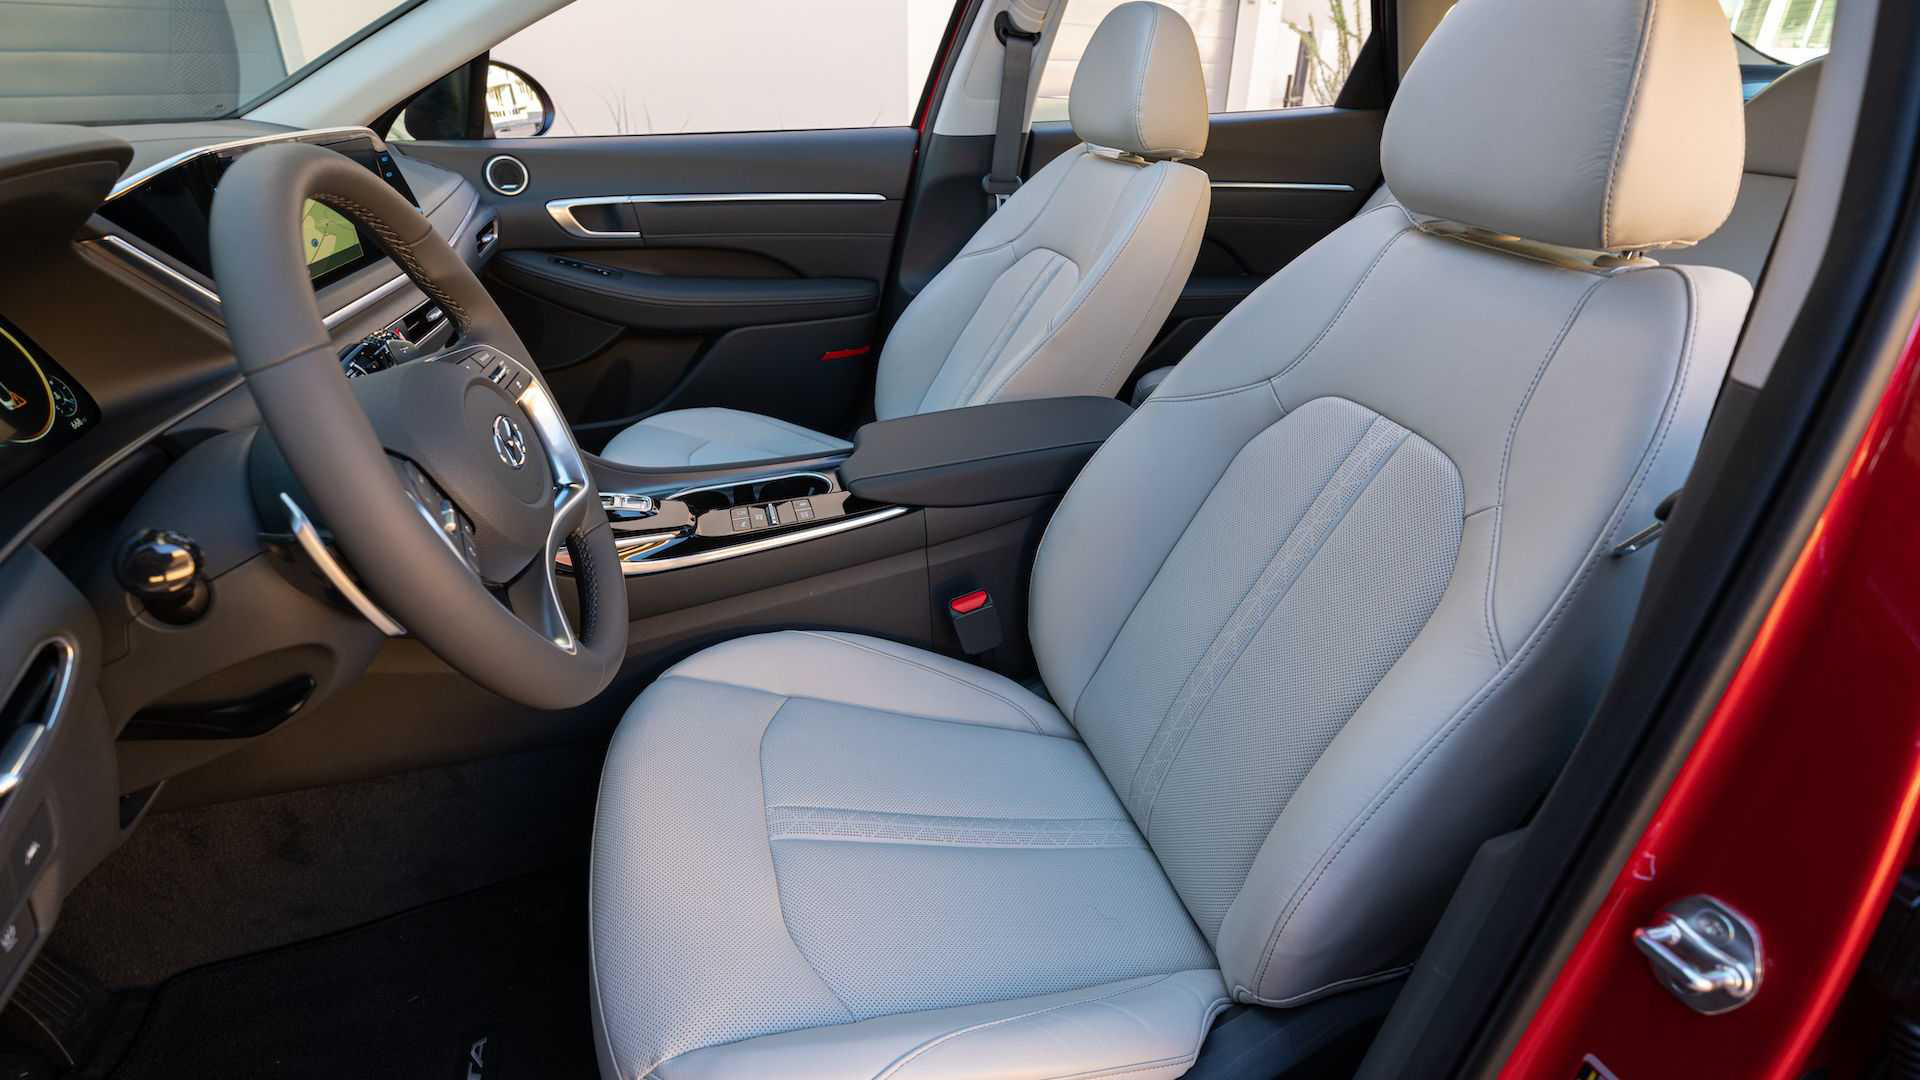 Hyundai Sonata thế hệ mới thêm nâng cấp công nghệ đấu Toyota Camry - Ảnh 3.